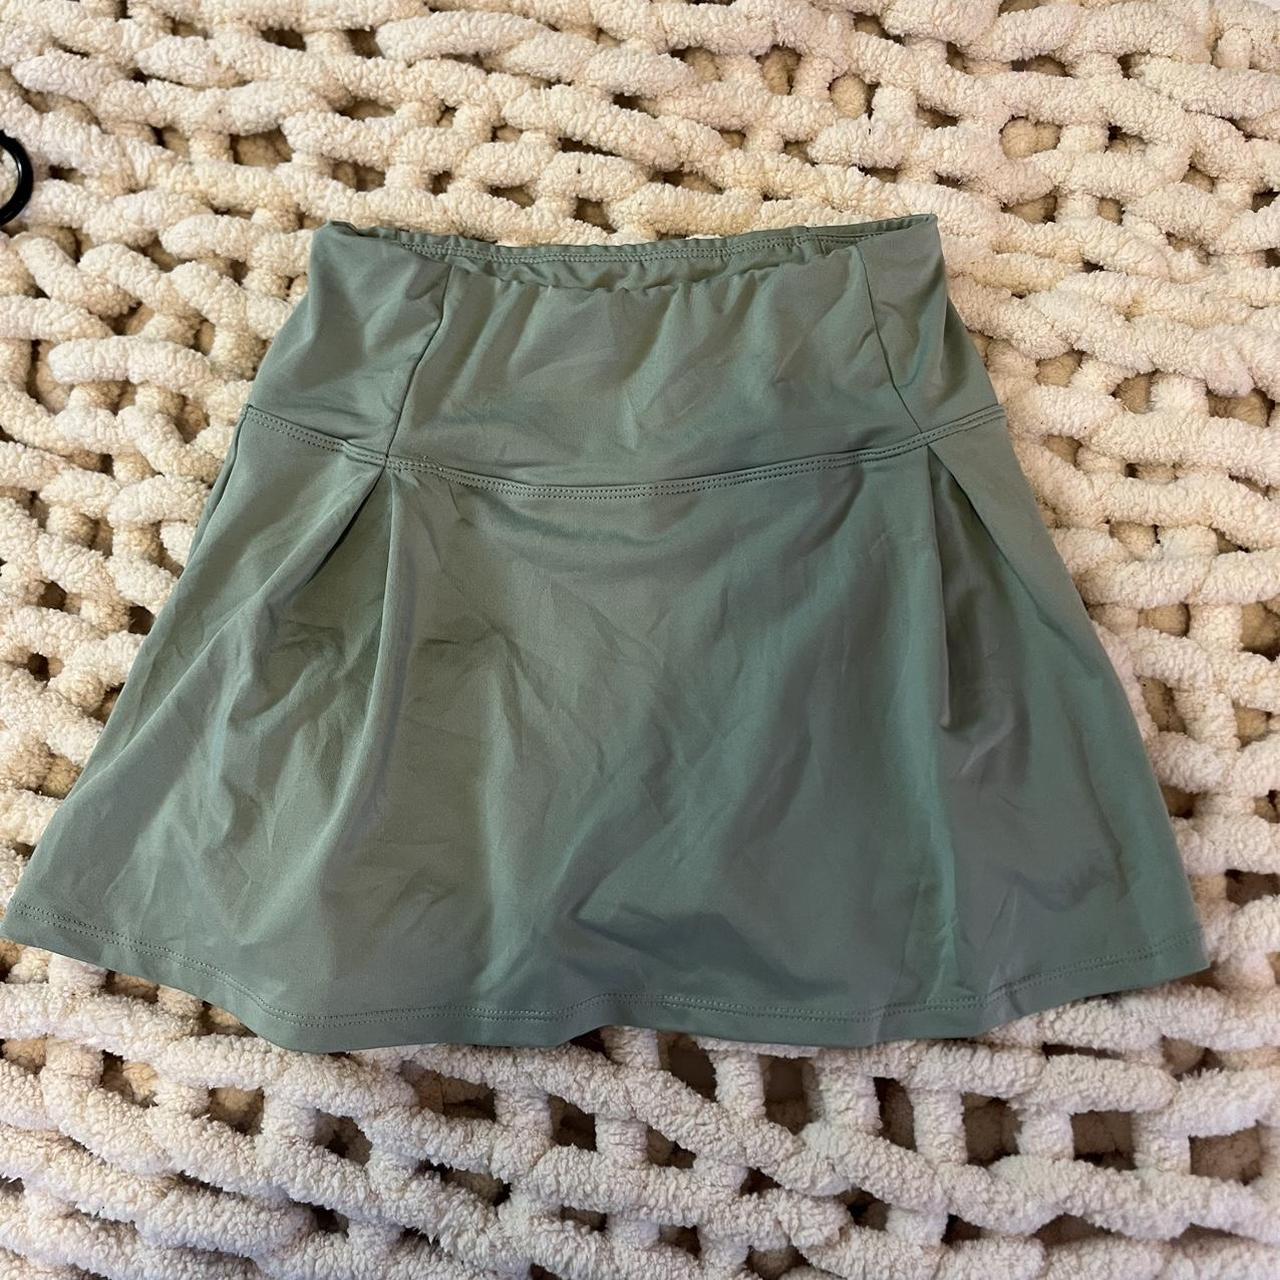 Light Green Tennis Skirt with Shorts Super cute... - Depop